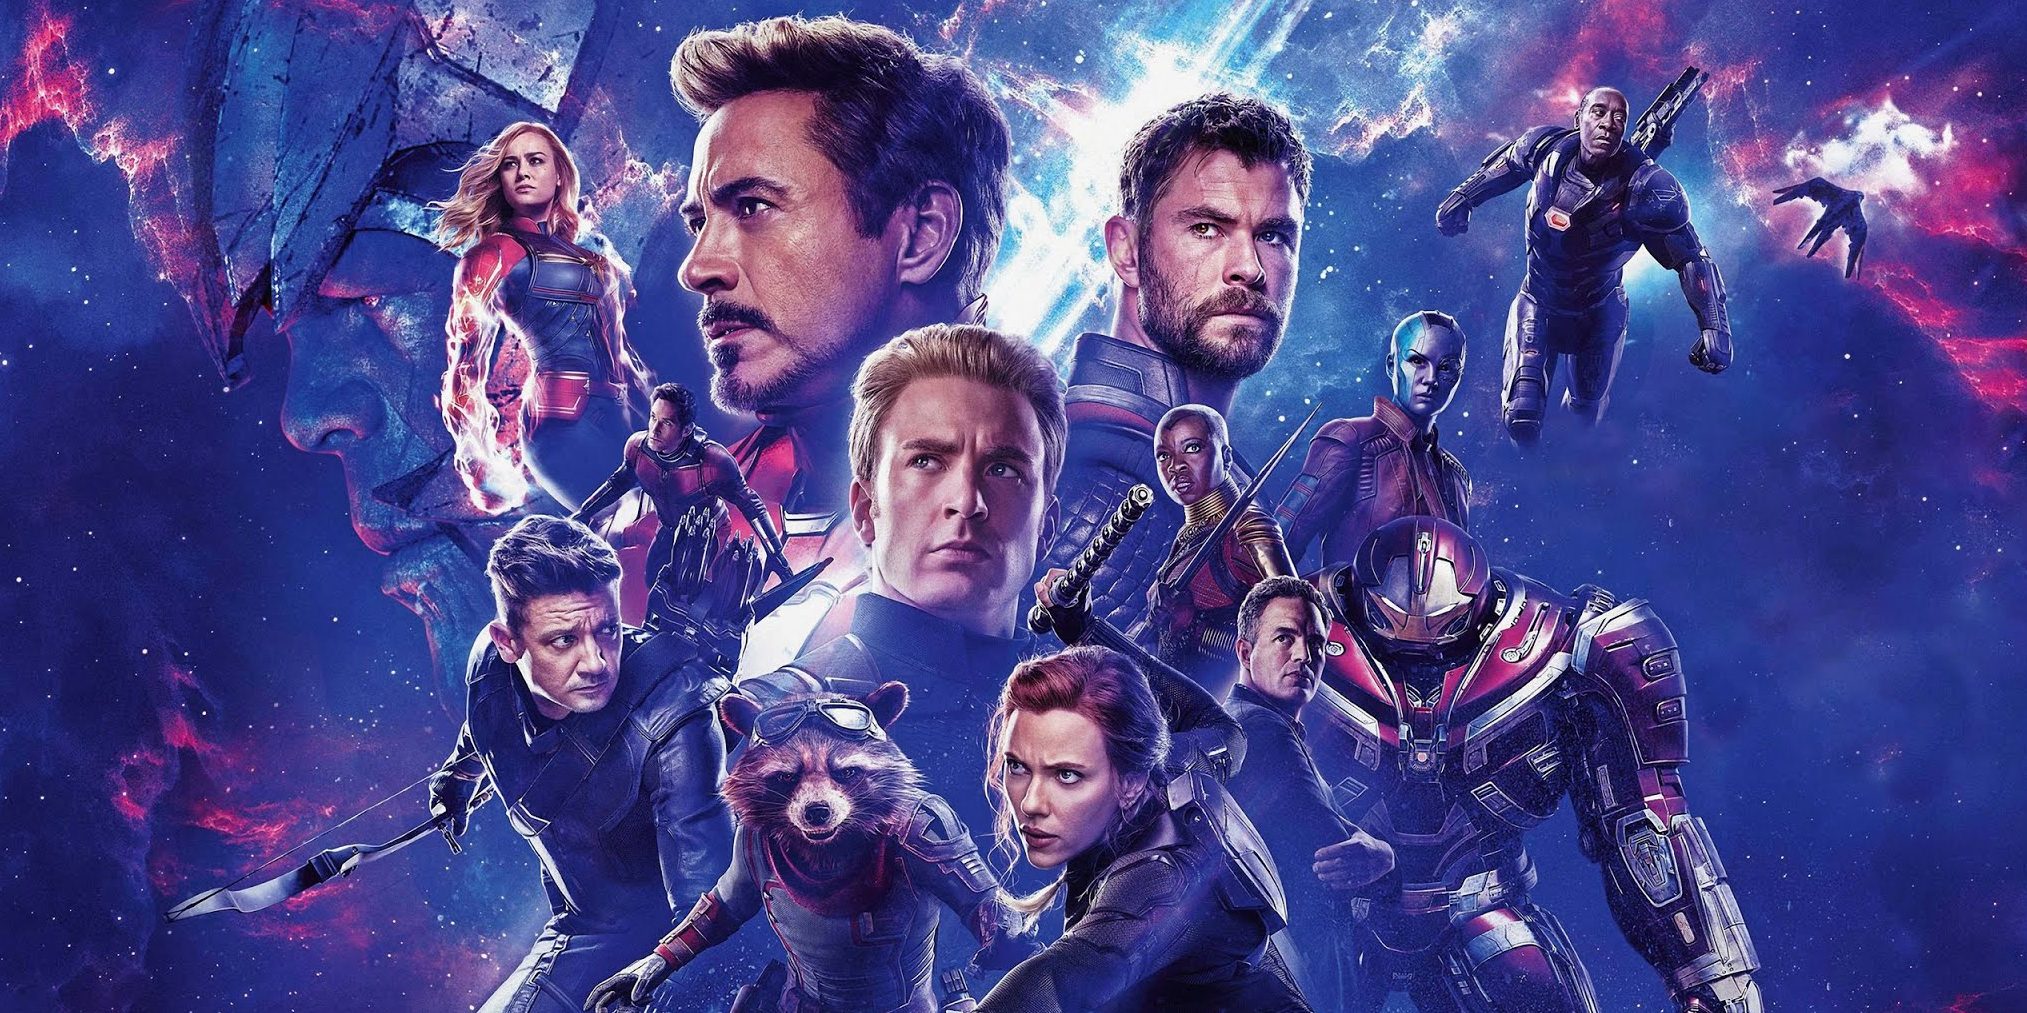 Los directores de “Avengers:Endgame” hablaron sobre el futuro de las películas de superhéroes